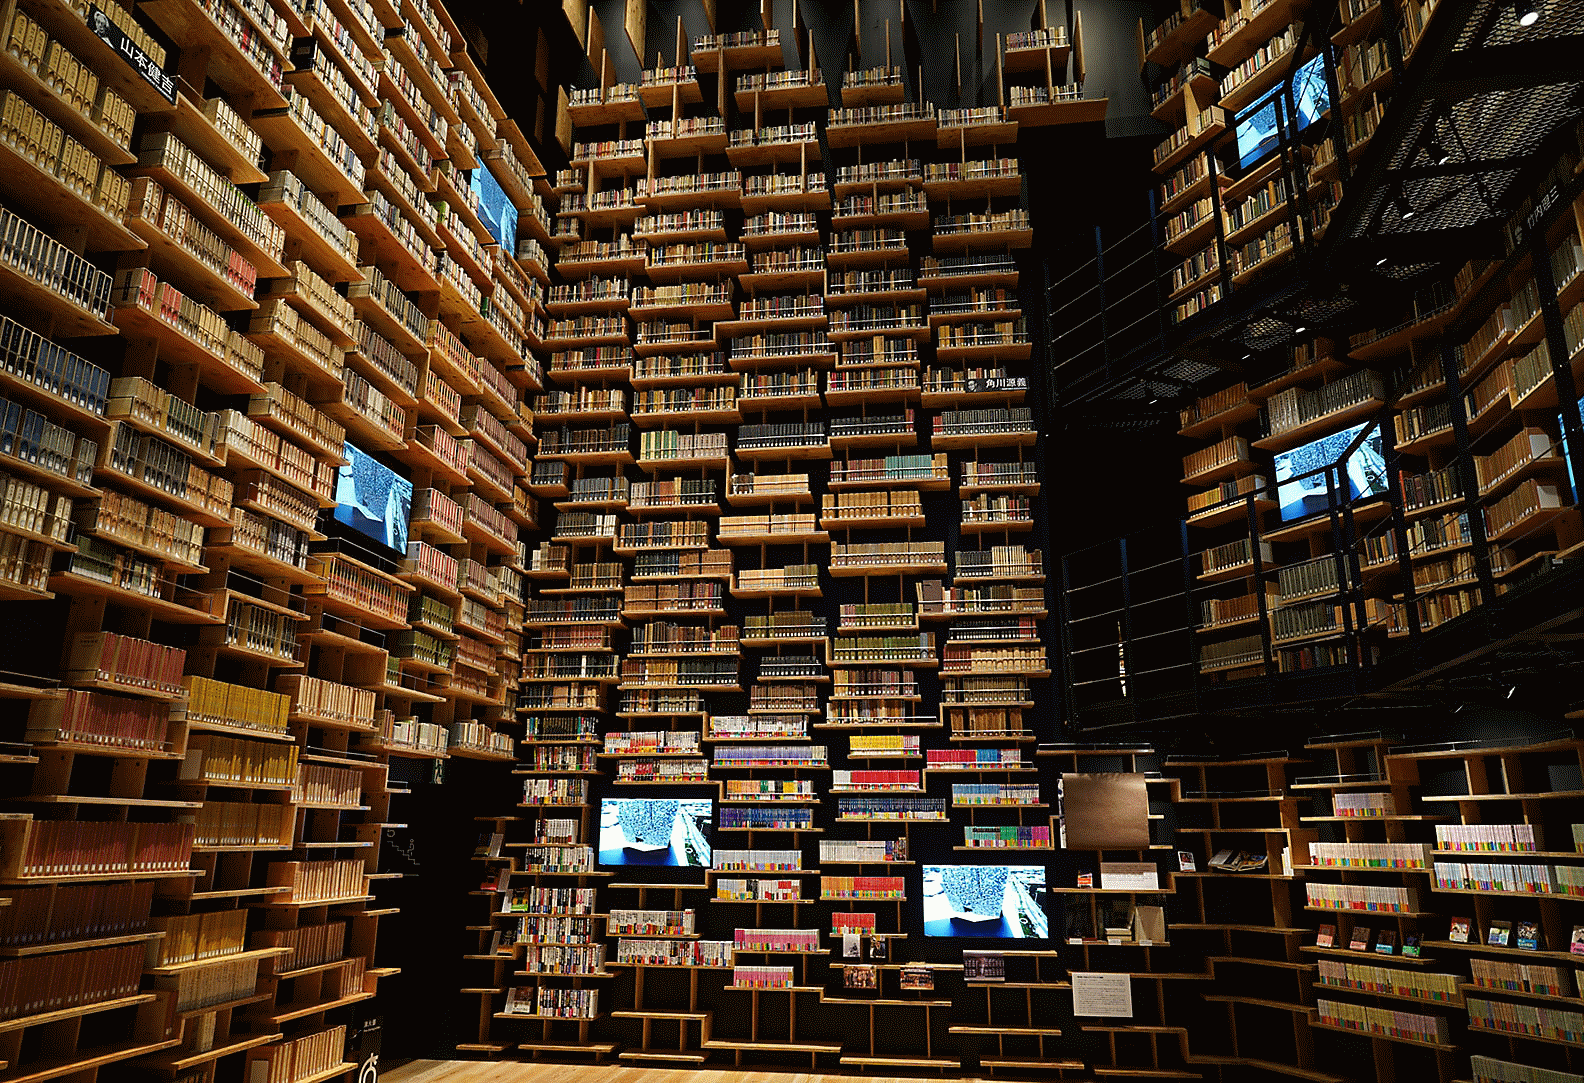 Imagen del interior de una biblioteca capturada con este objetivo con alta resolución en todo el encuadre